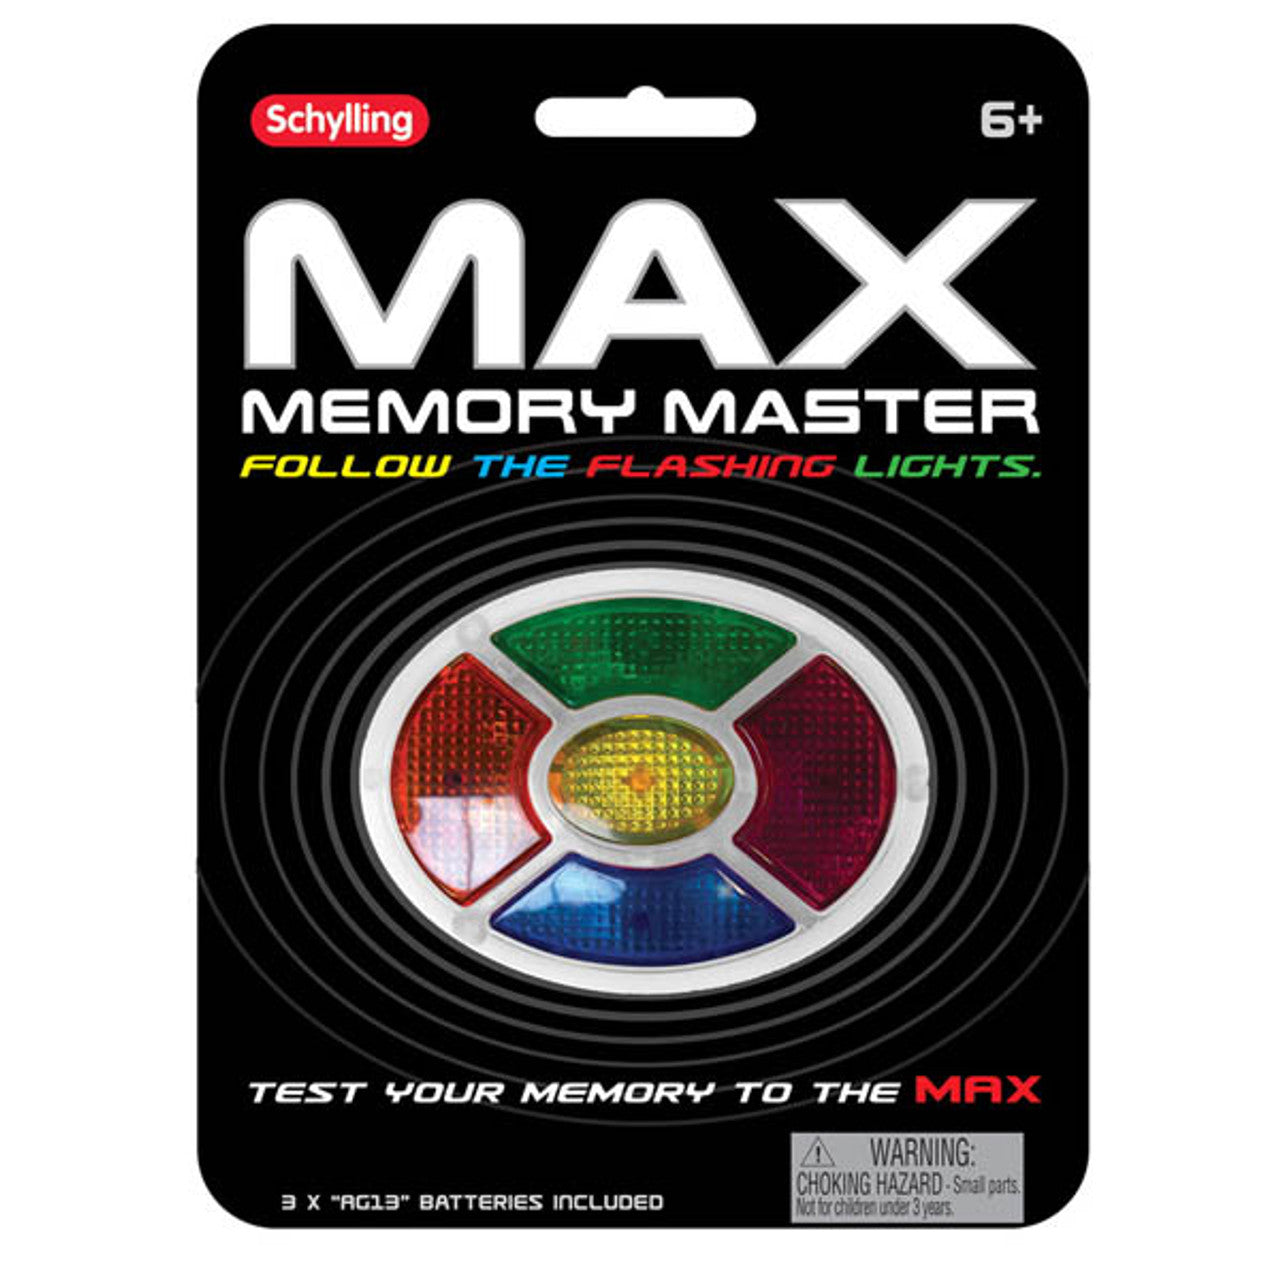 Max Mini Memory Game